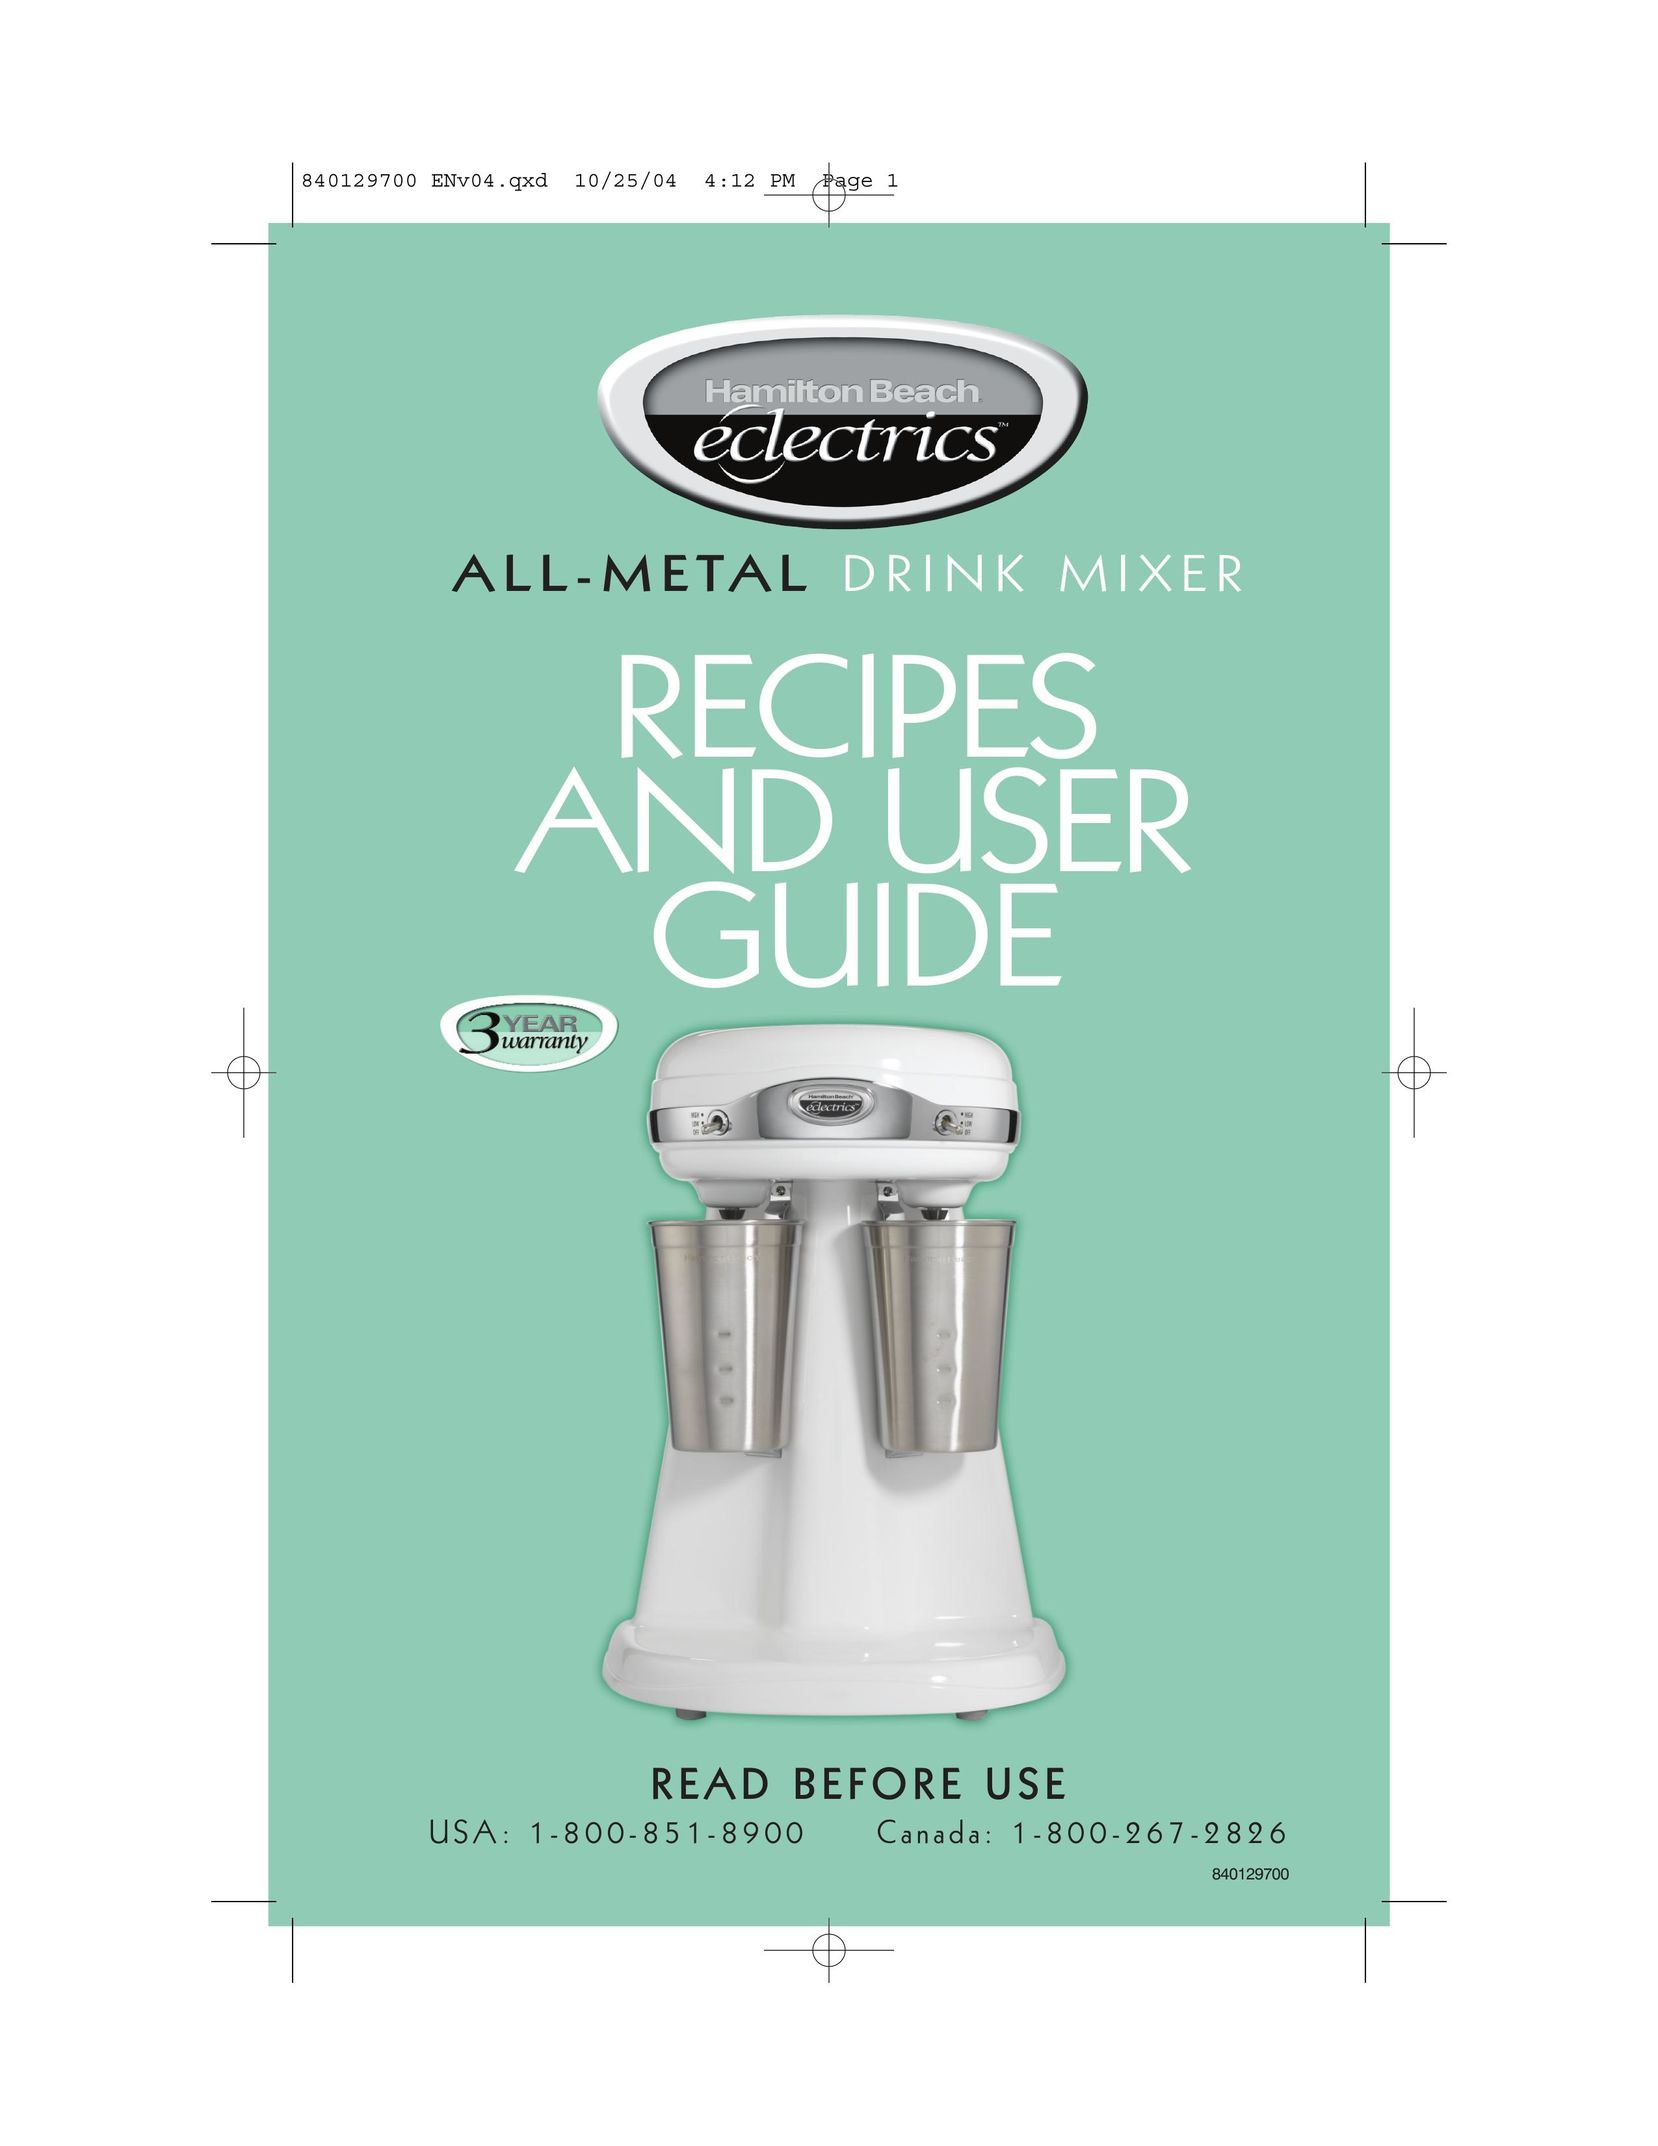 Hamilton Beach Drink Mixer Mixer User Manual